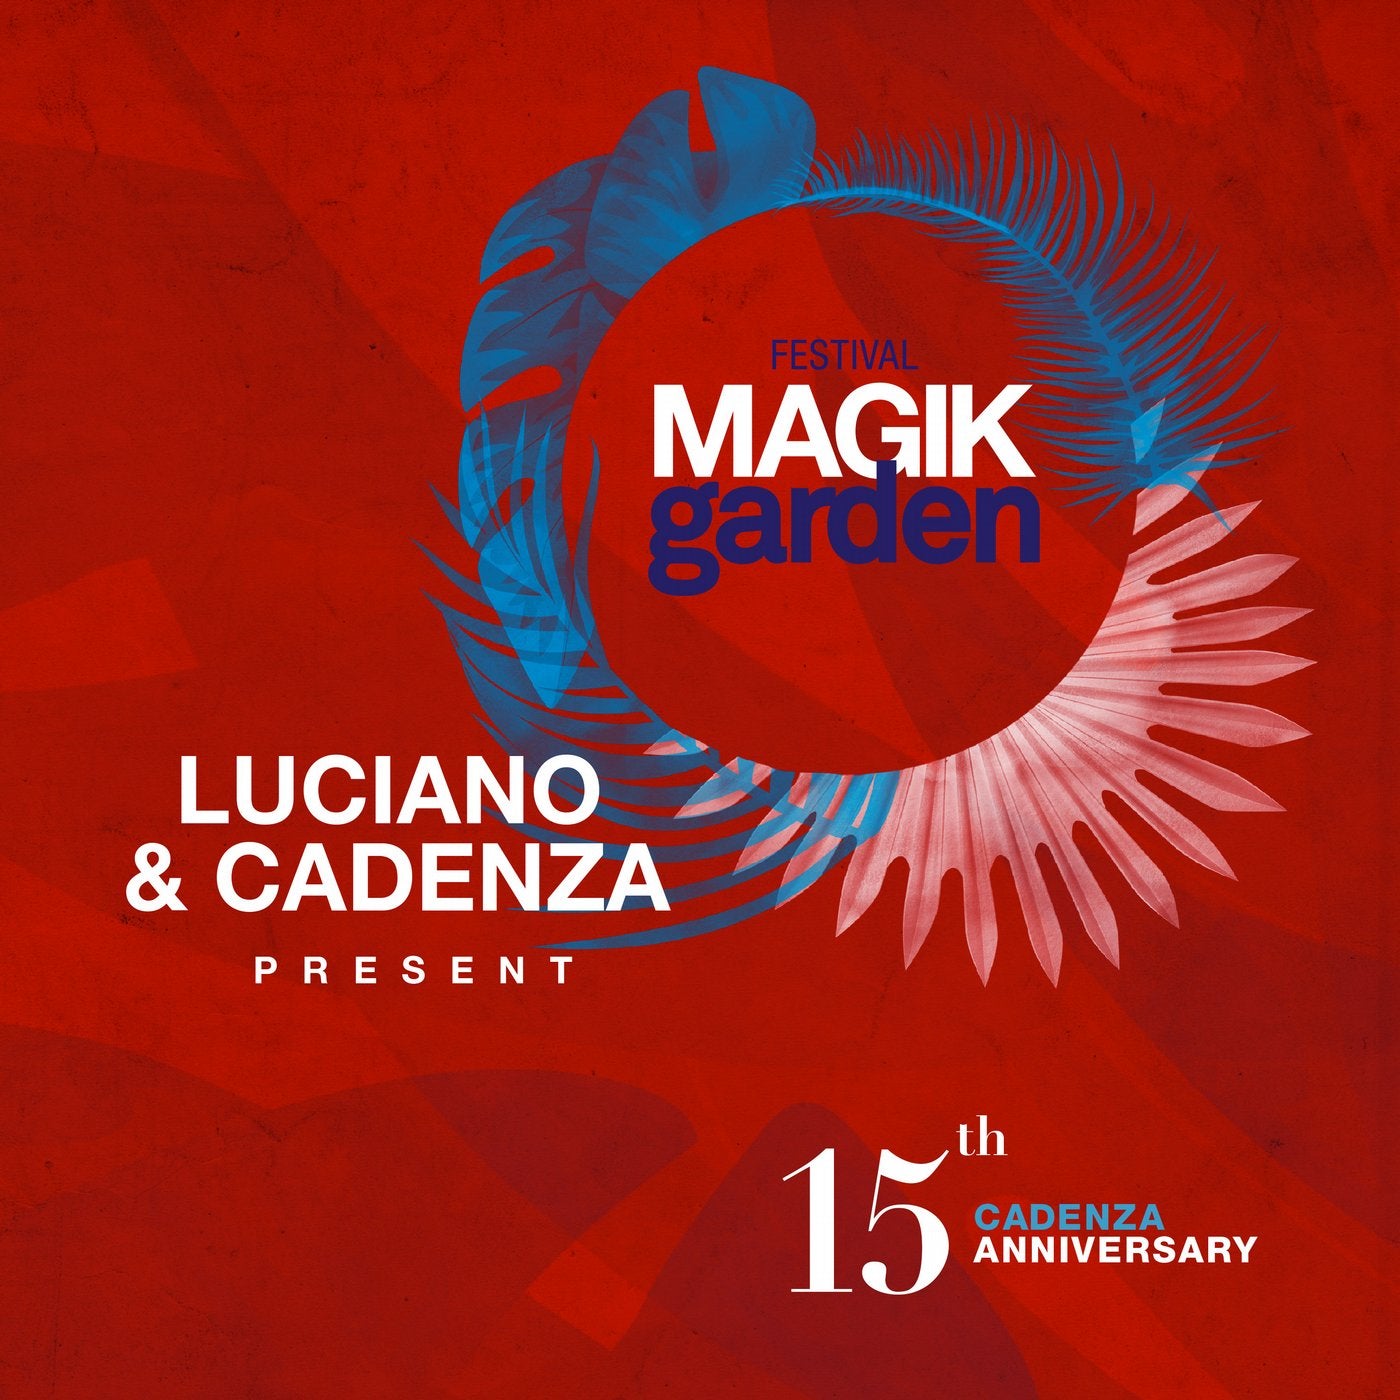 Luciano & Cadenza Present Magik Garden Festival